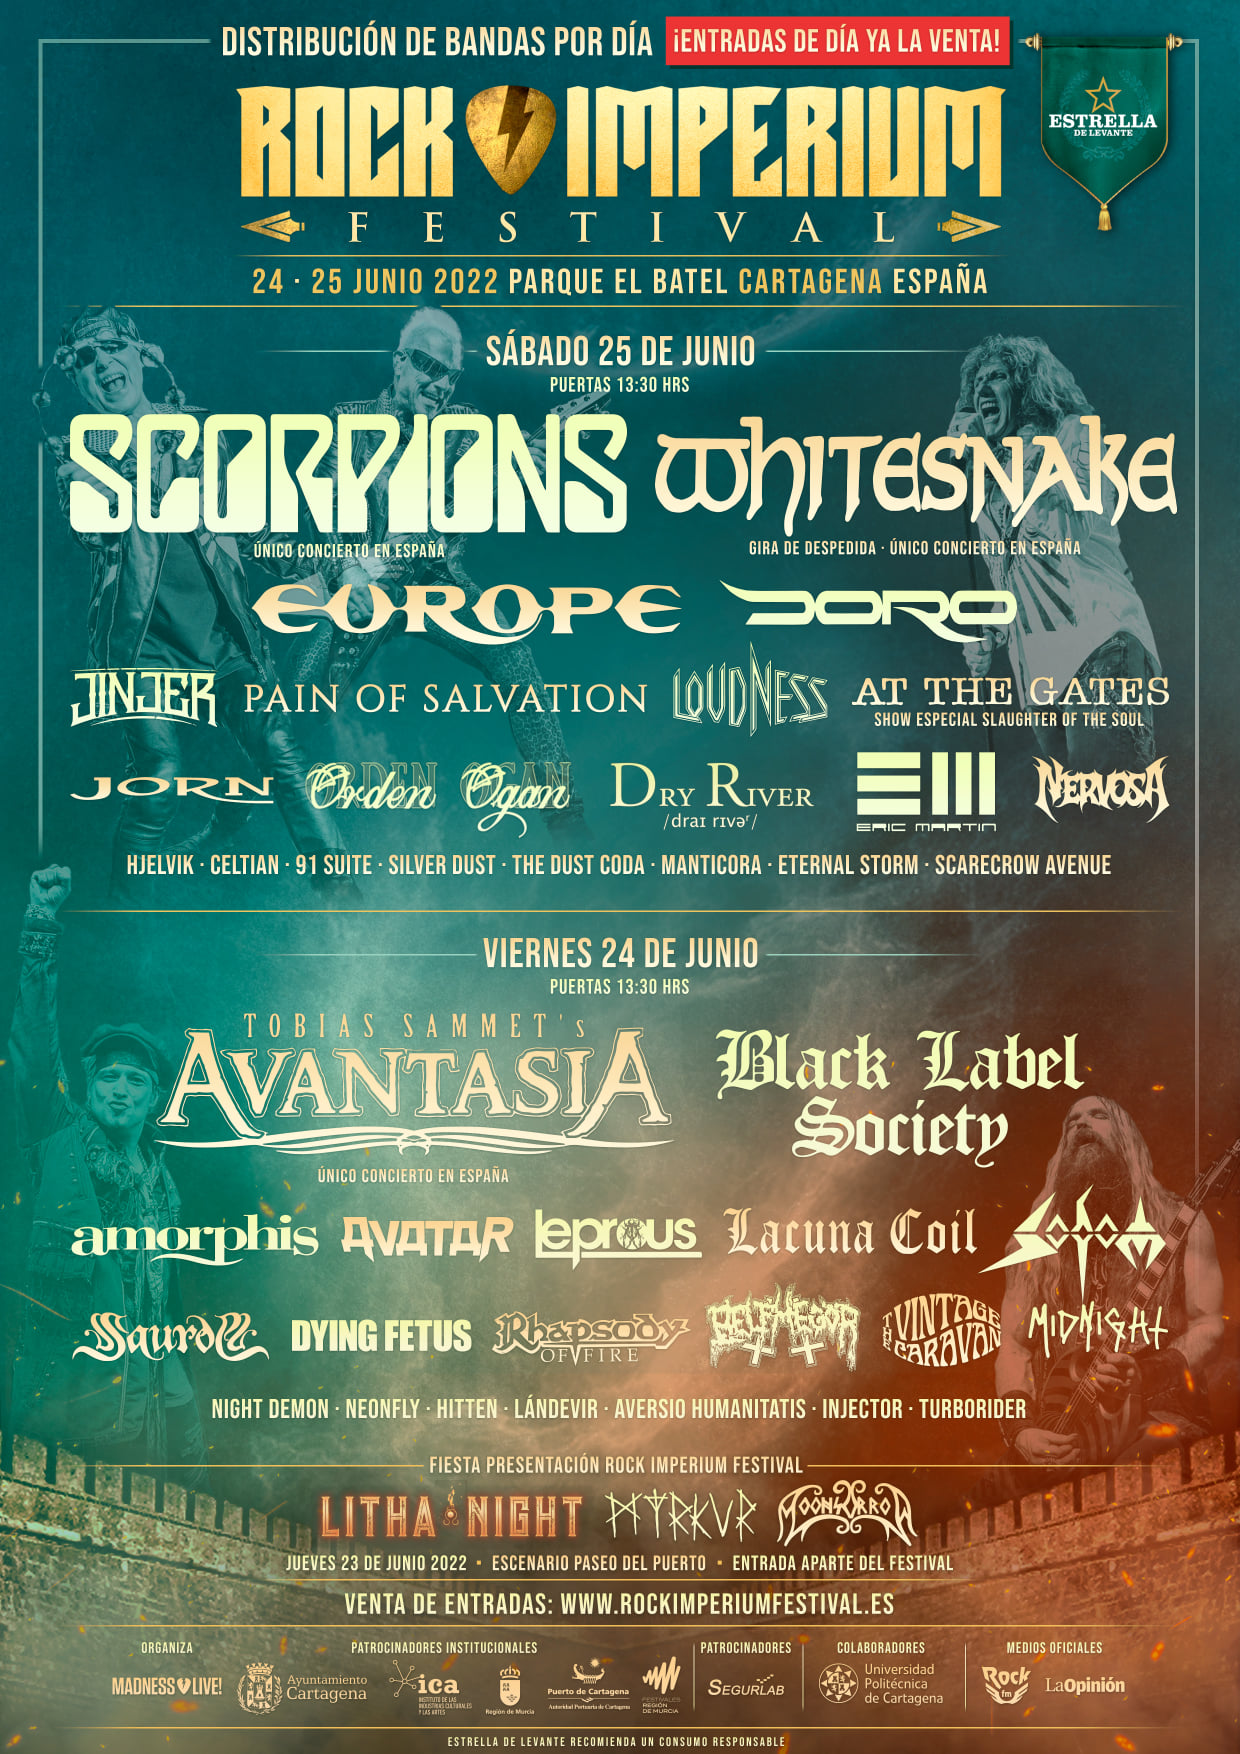 Rock Imperium Festival  24 y 25 de junio de 2022 en Cartagena (España)  - Página 2 243303807_160108002985637_996728147363203815_n